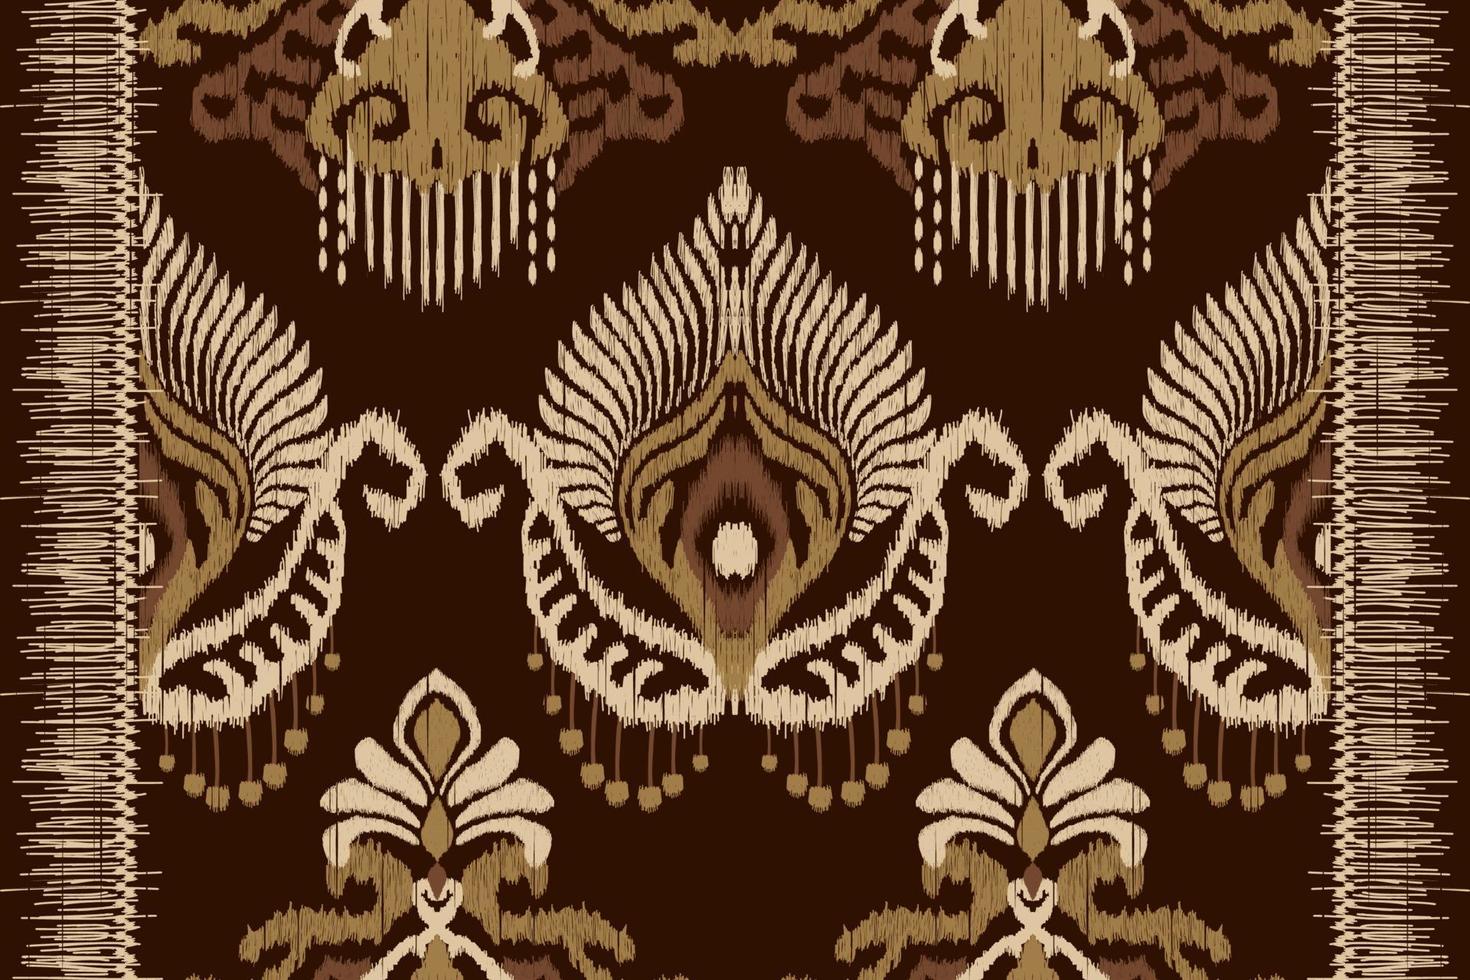 afrikansk ikat paisley broderi på brun bakgrund.geometrisk etnisk orientalisk sömlös mönster traditionell.aztec stil abstrakt vector.design för textur, tyg, kläder, inslagning, dekoration, matta. vektor